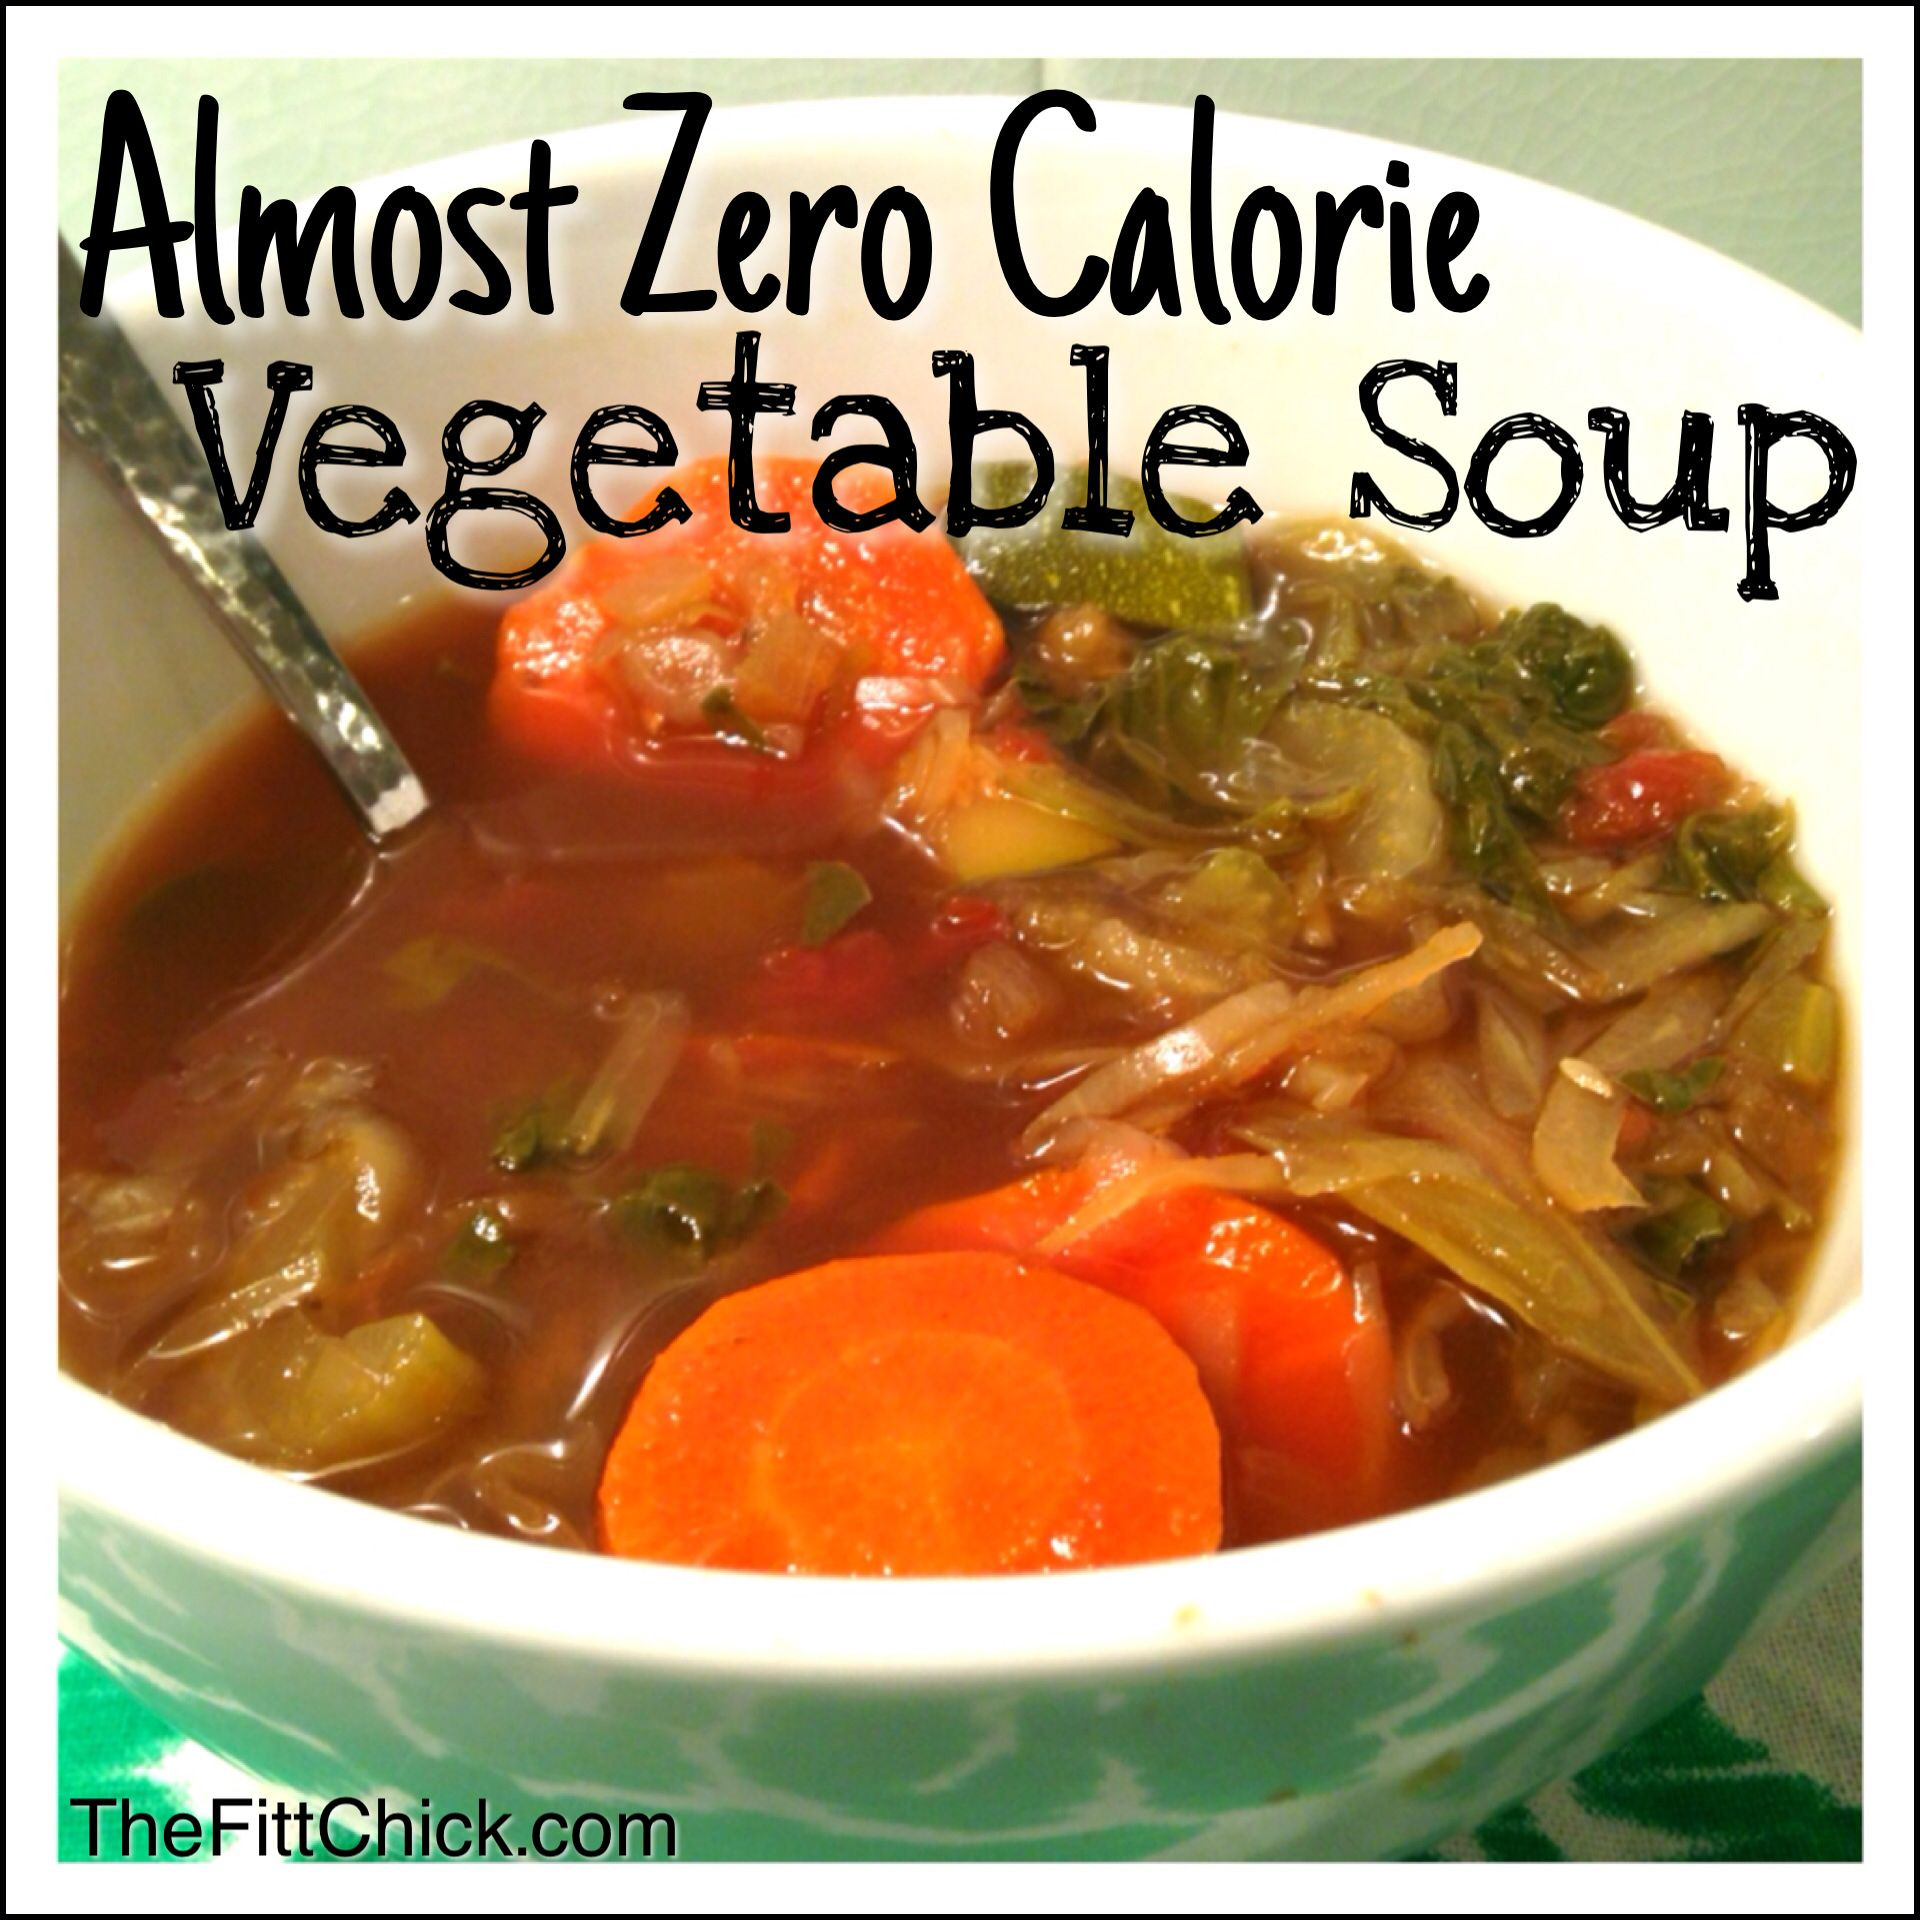 Low Calorie Soup Recipes Weight Watchers
 Best 25 Low calorie ve able soup ideas on Pinterest